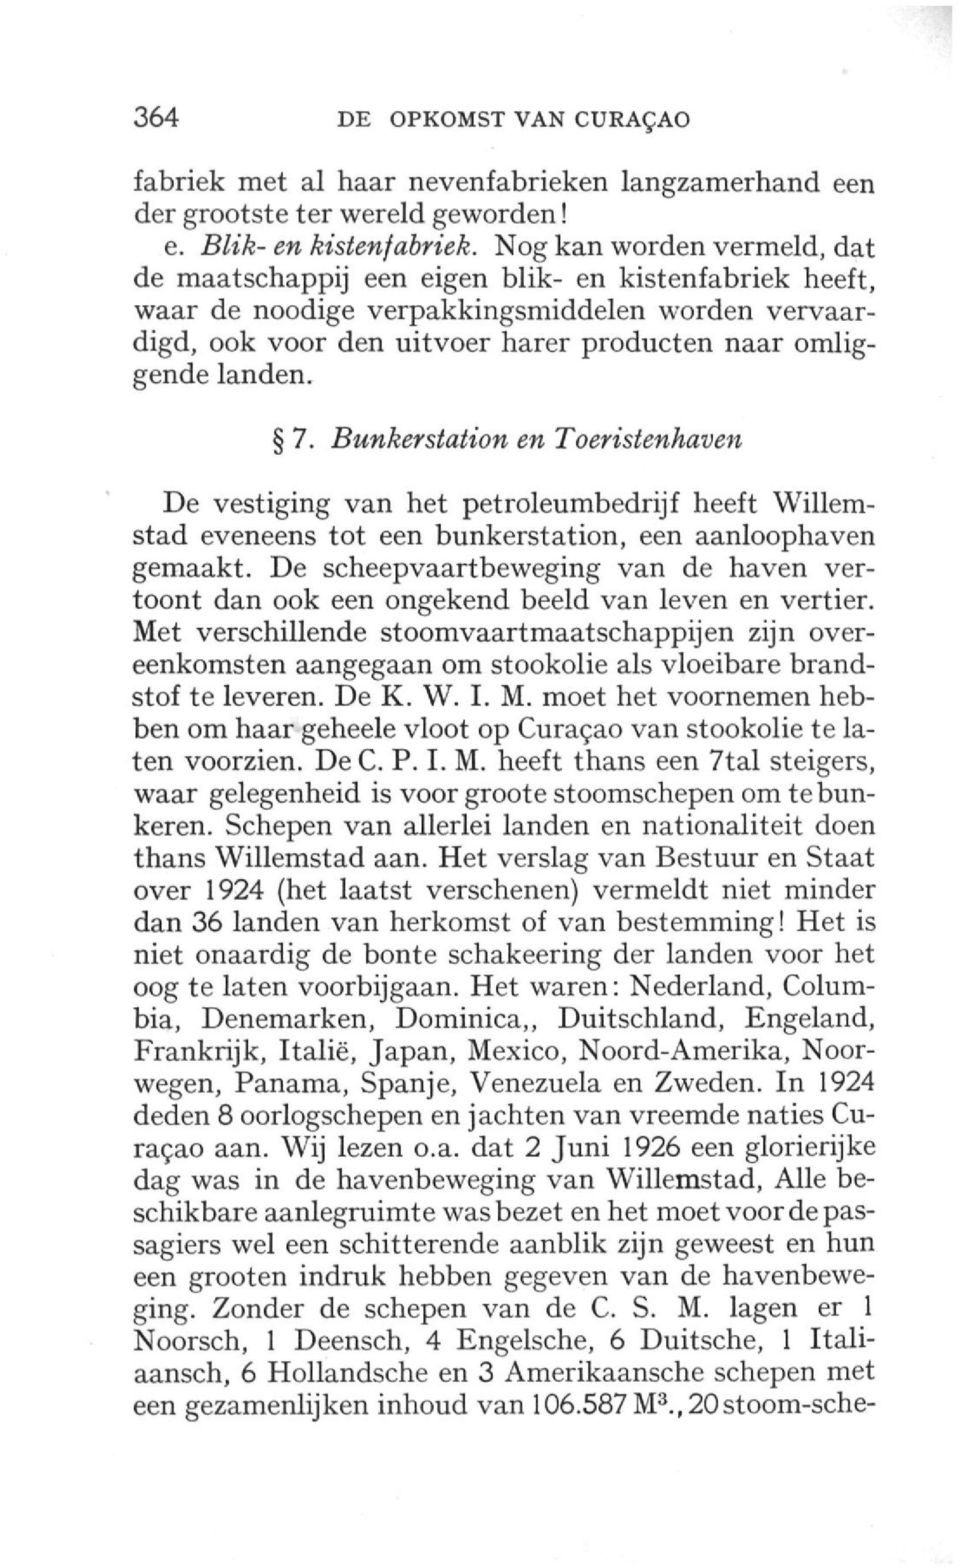 7. -Bwwforstafo'ow en De vestiging van het petroleumbedrijf heeft Willemstad eveneens tot een bunkerstation, een aanloophaven gemaakt.